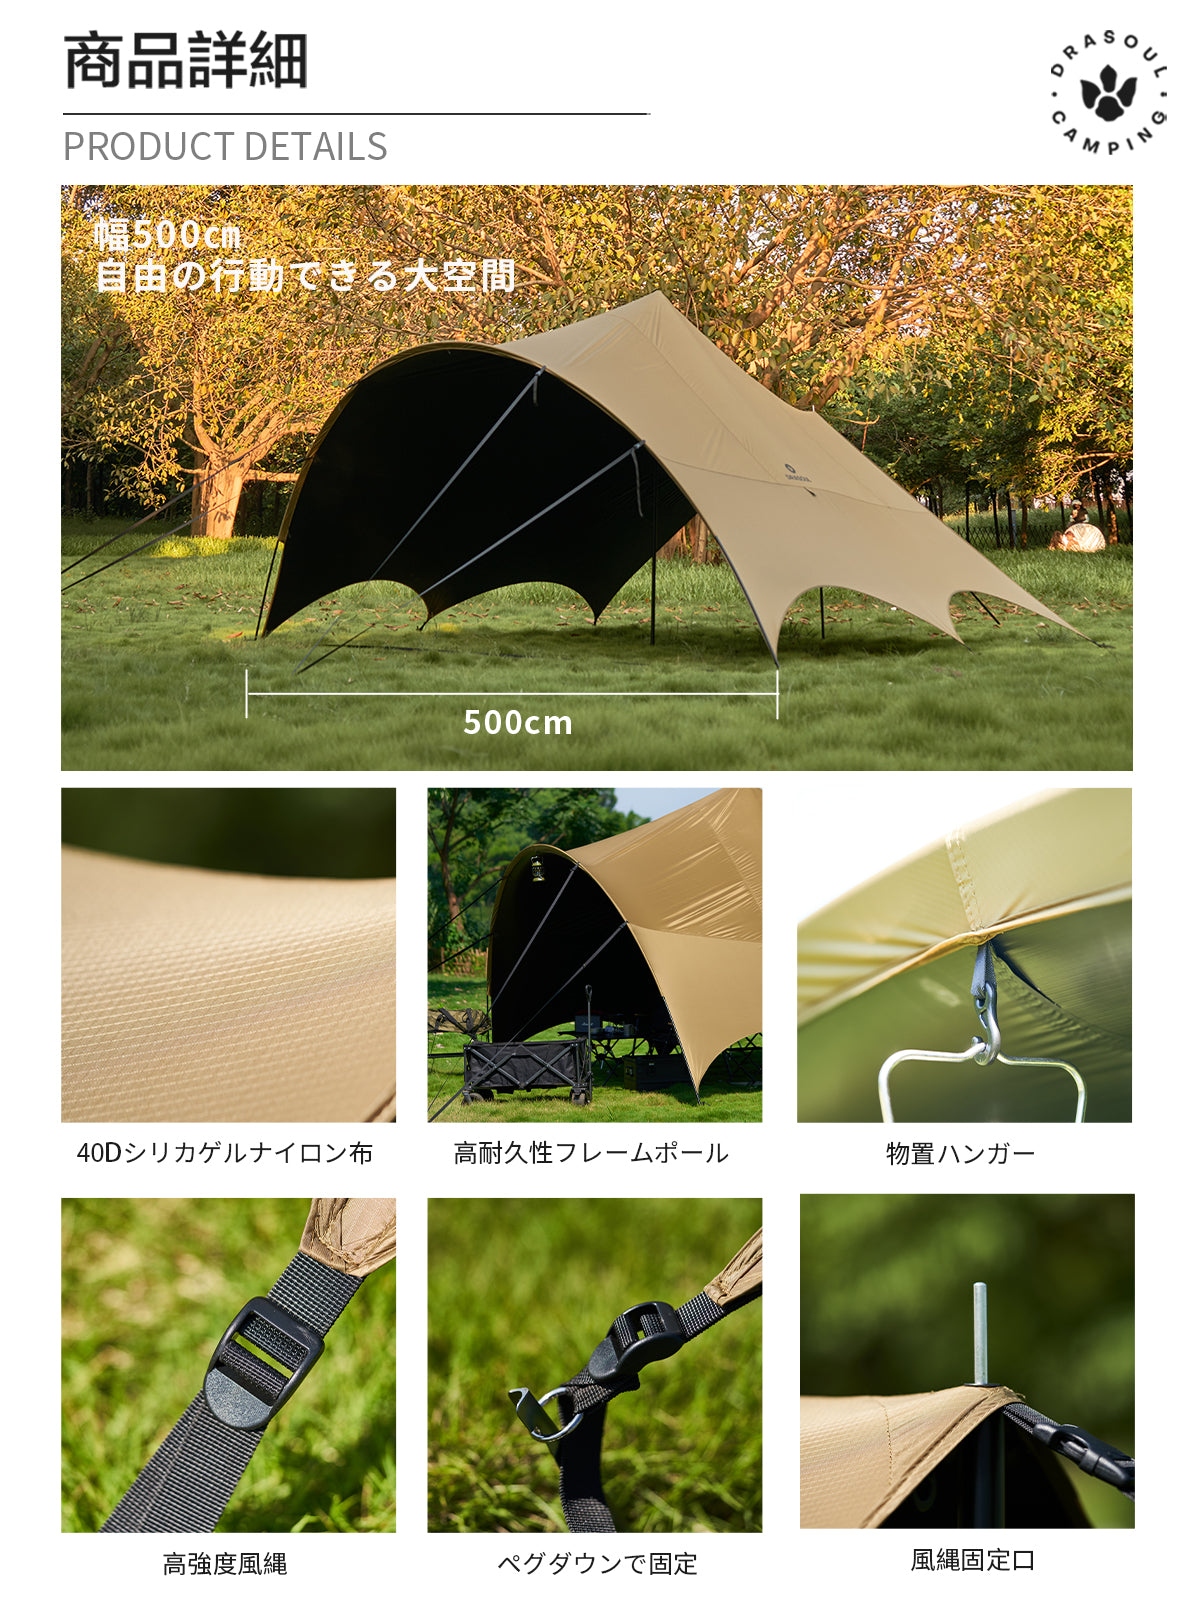 胡蝶天幕テント防雨防風 UVカット 遮光 ユニック ペグロープ付き